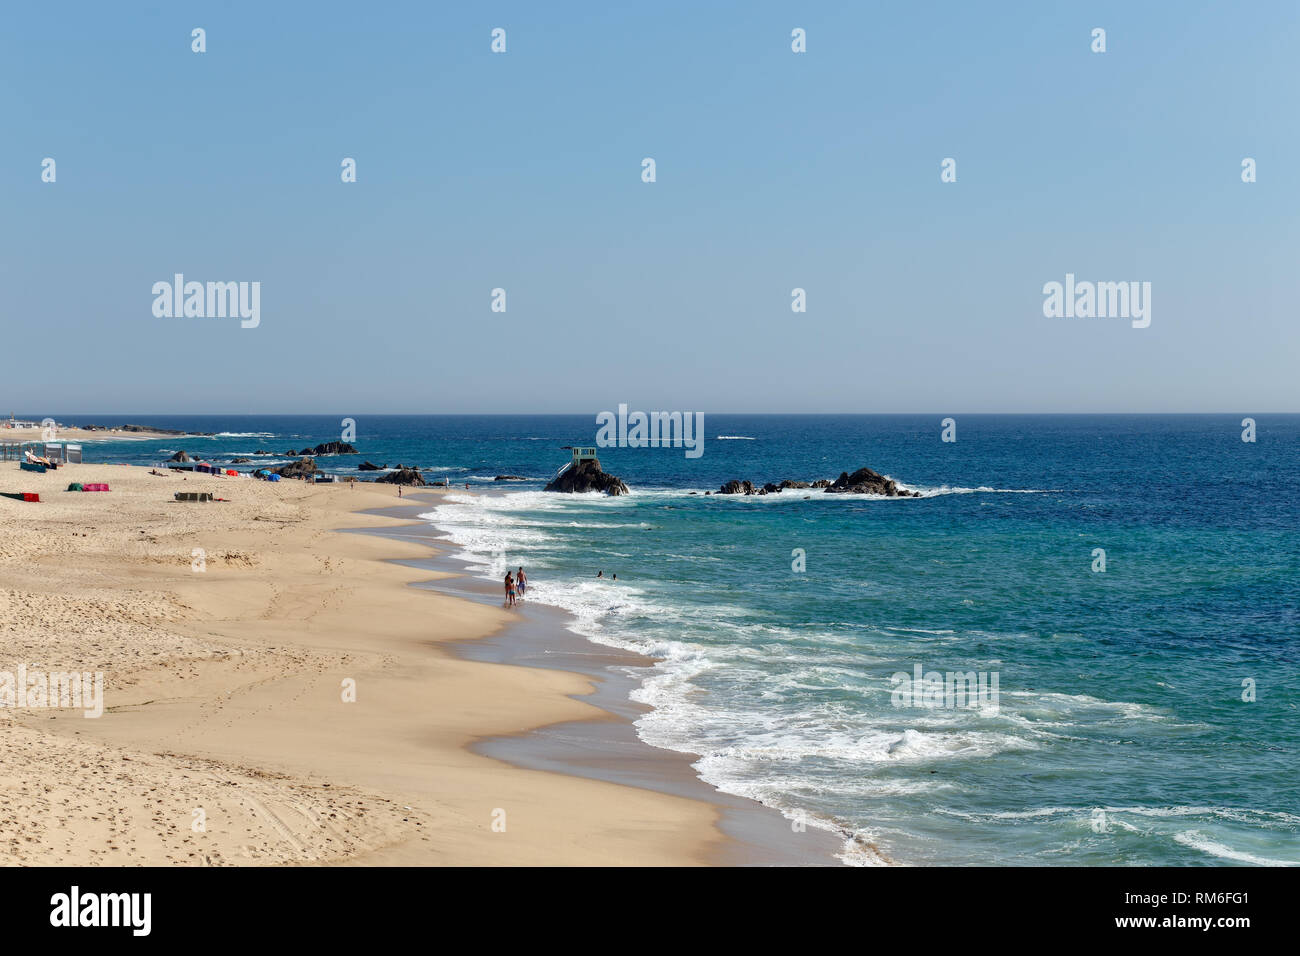 Vila do Conde, Portugal - 19 juin 2015 : large vue de Vila do Conde Beach au début de la saison balnéaire, nord du Portugal Banque D'Images